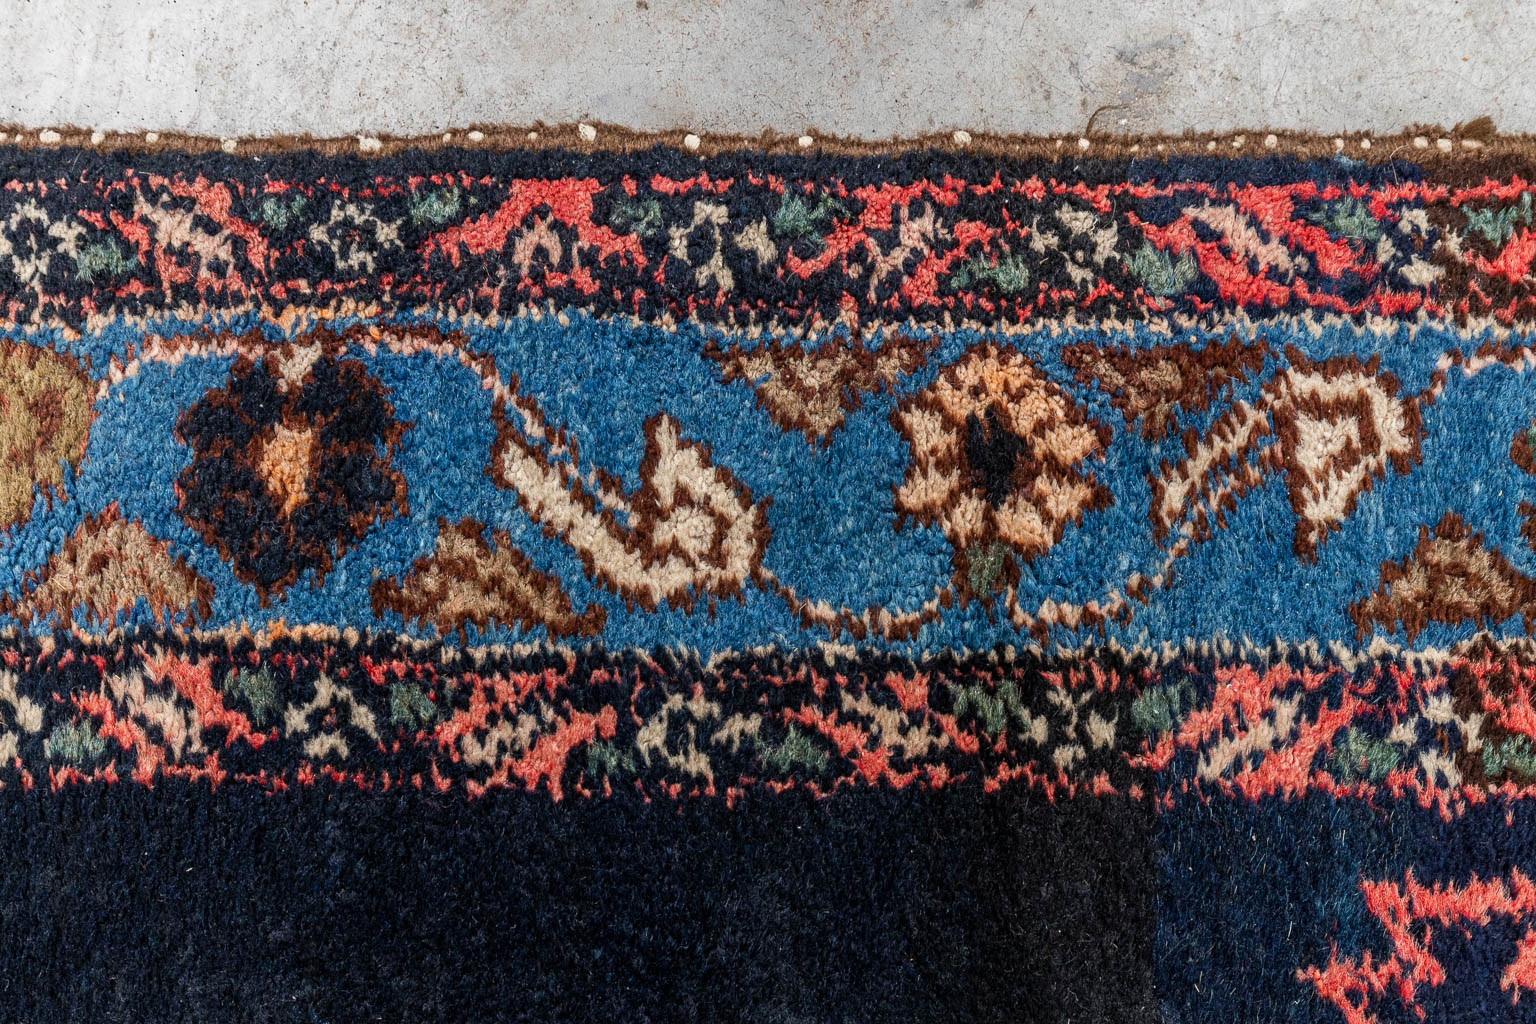 An antique Oriental carpet, runner, Hamadan, Iran. (D:500 x W:111 cm)